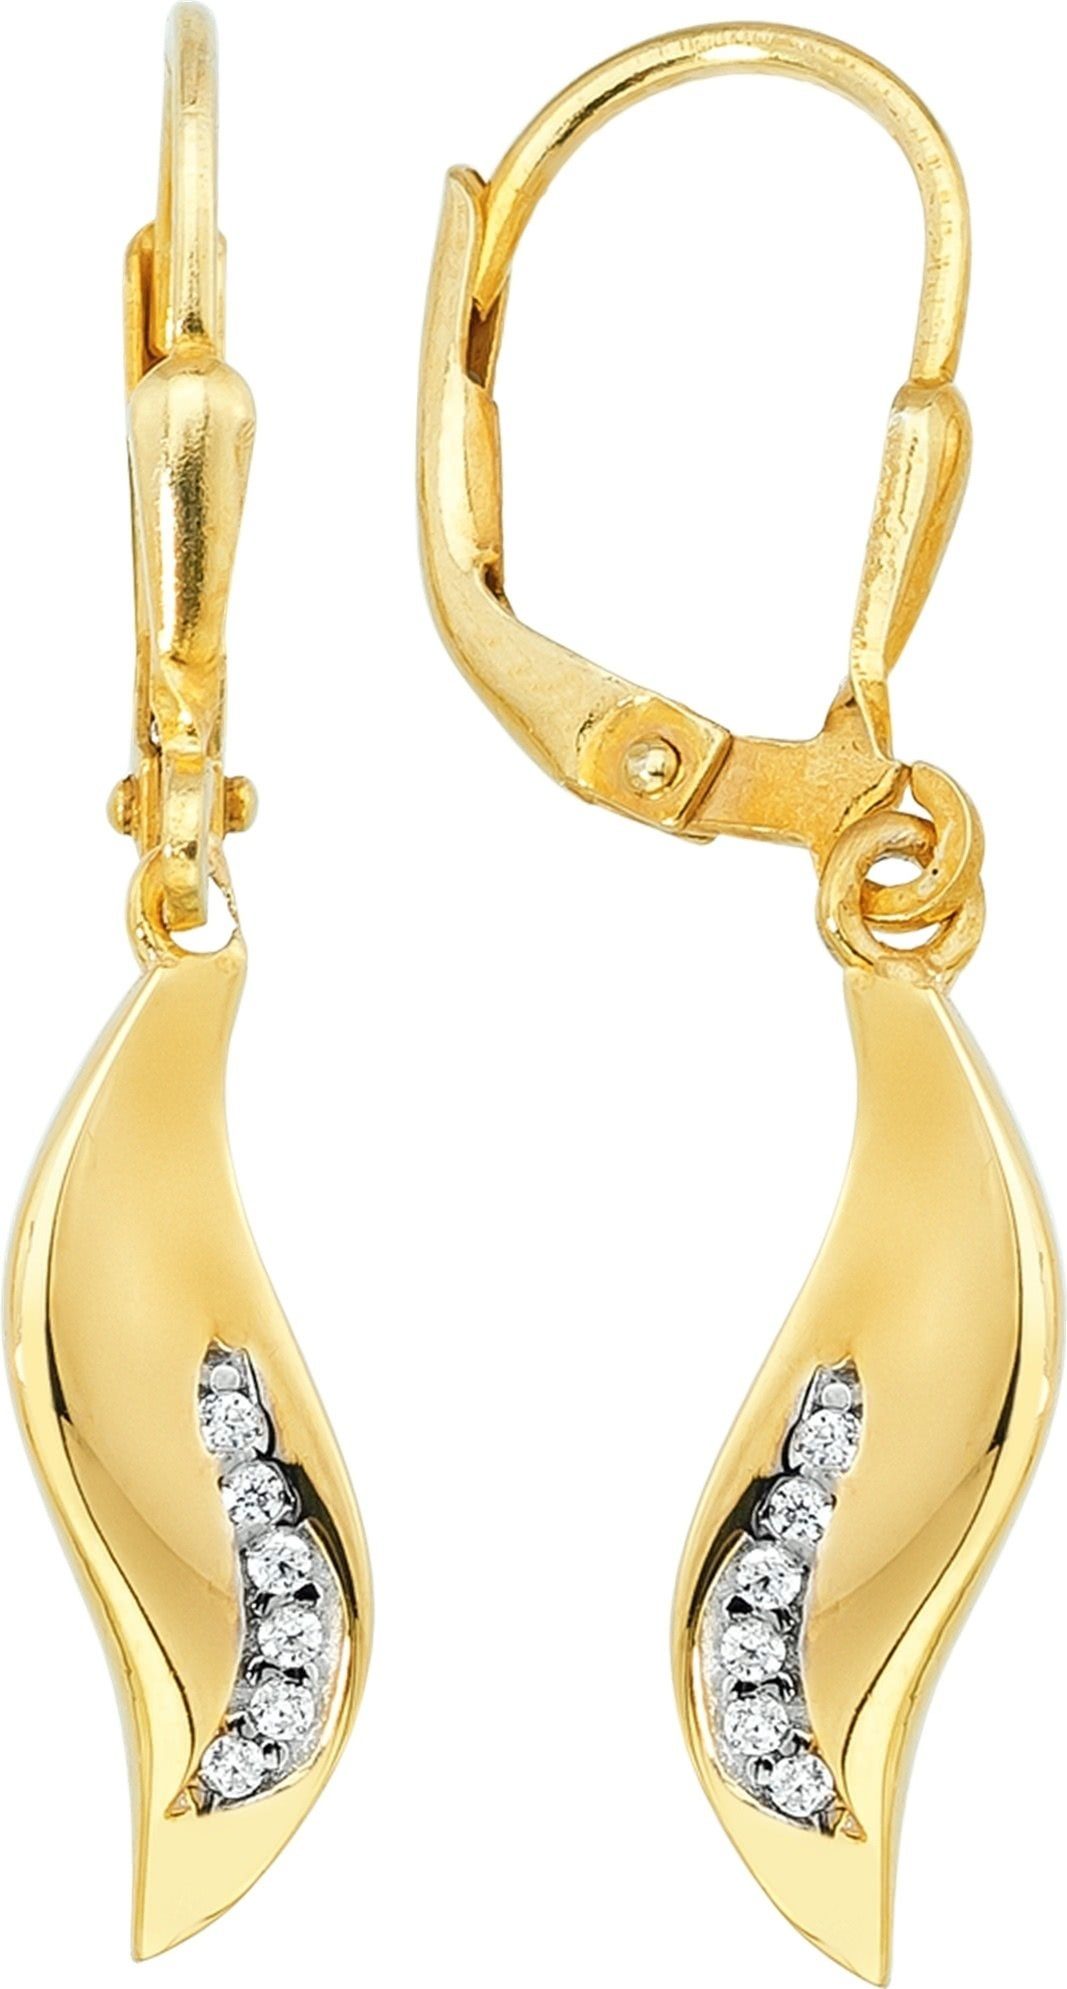 Balia Paar Ohrhänger Karat, Damen Gelbgold Welle Länge (Ohrhänger), Damen Ohrhänger Balia Gold 3,1cm 8 Creolen 333 - ca. aus für Welle